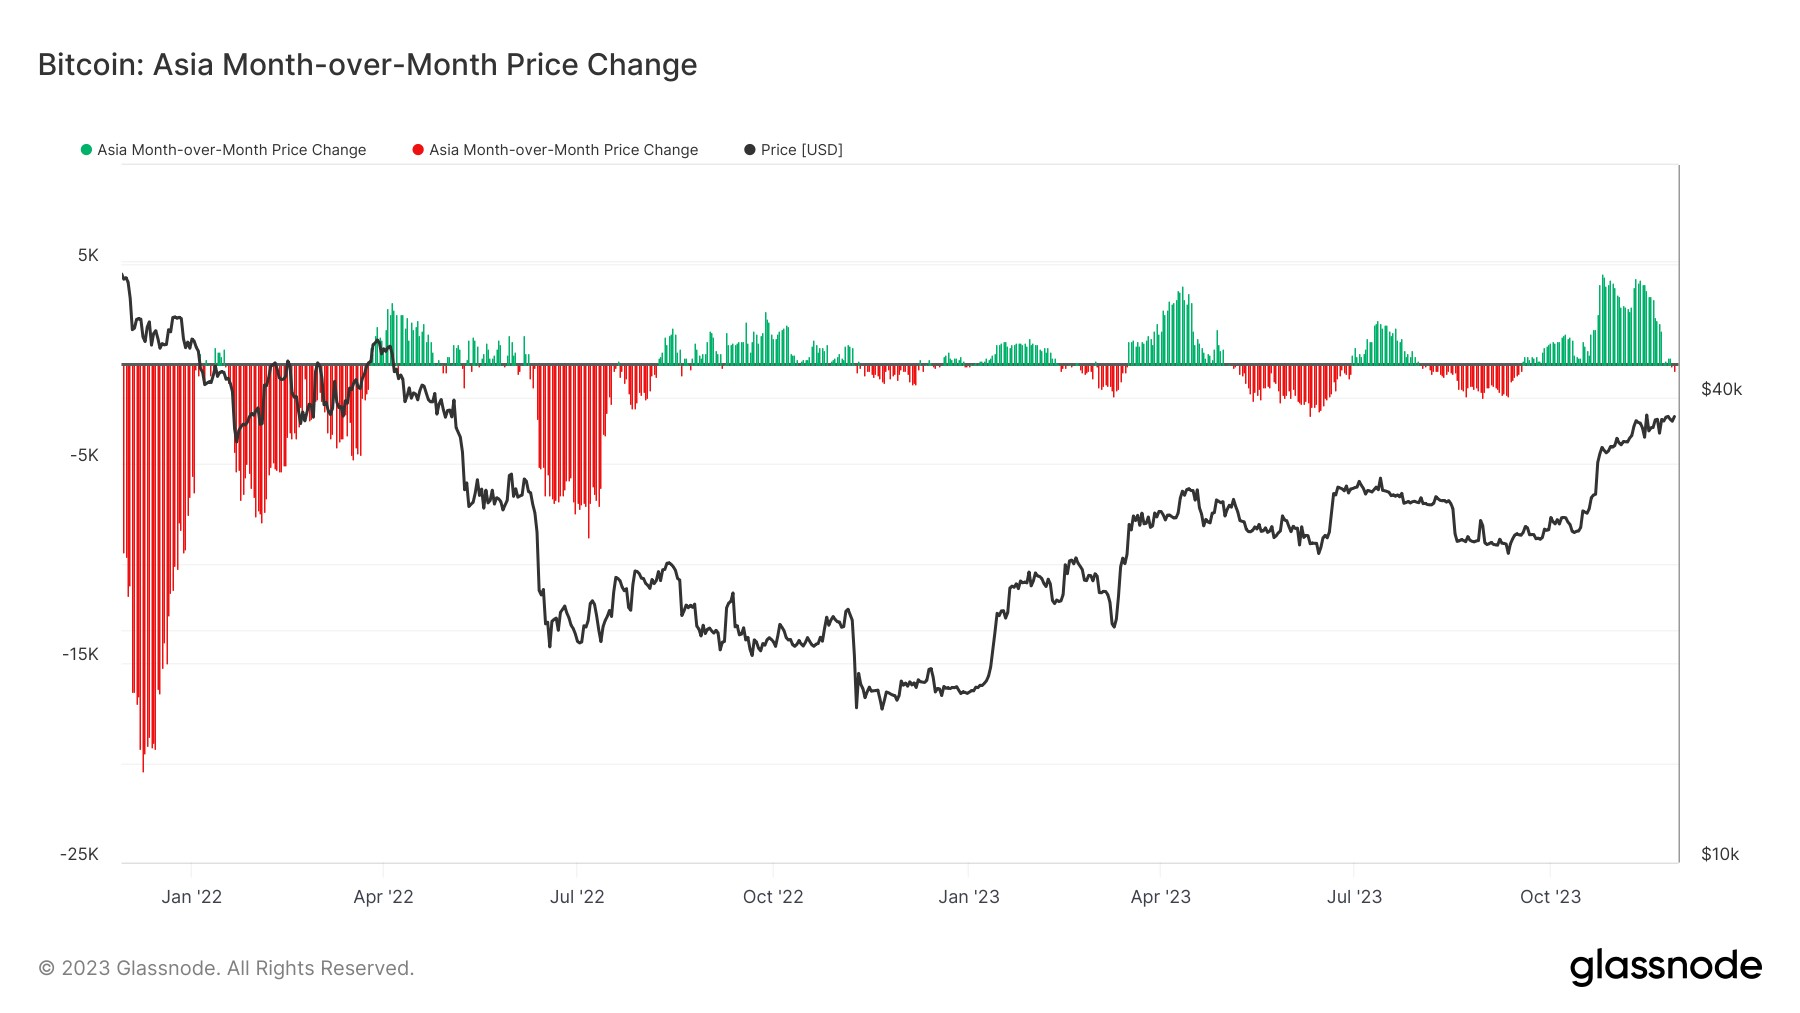 تغییر قیمت ماه آسیا - در طول ماه: (منبع: گلاسنود)